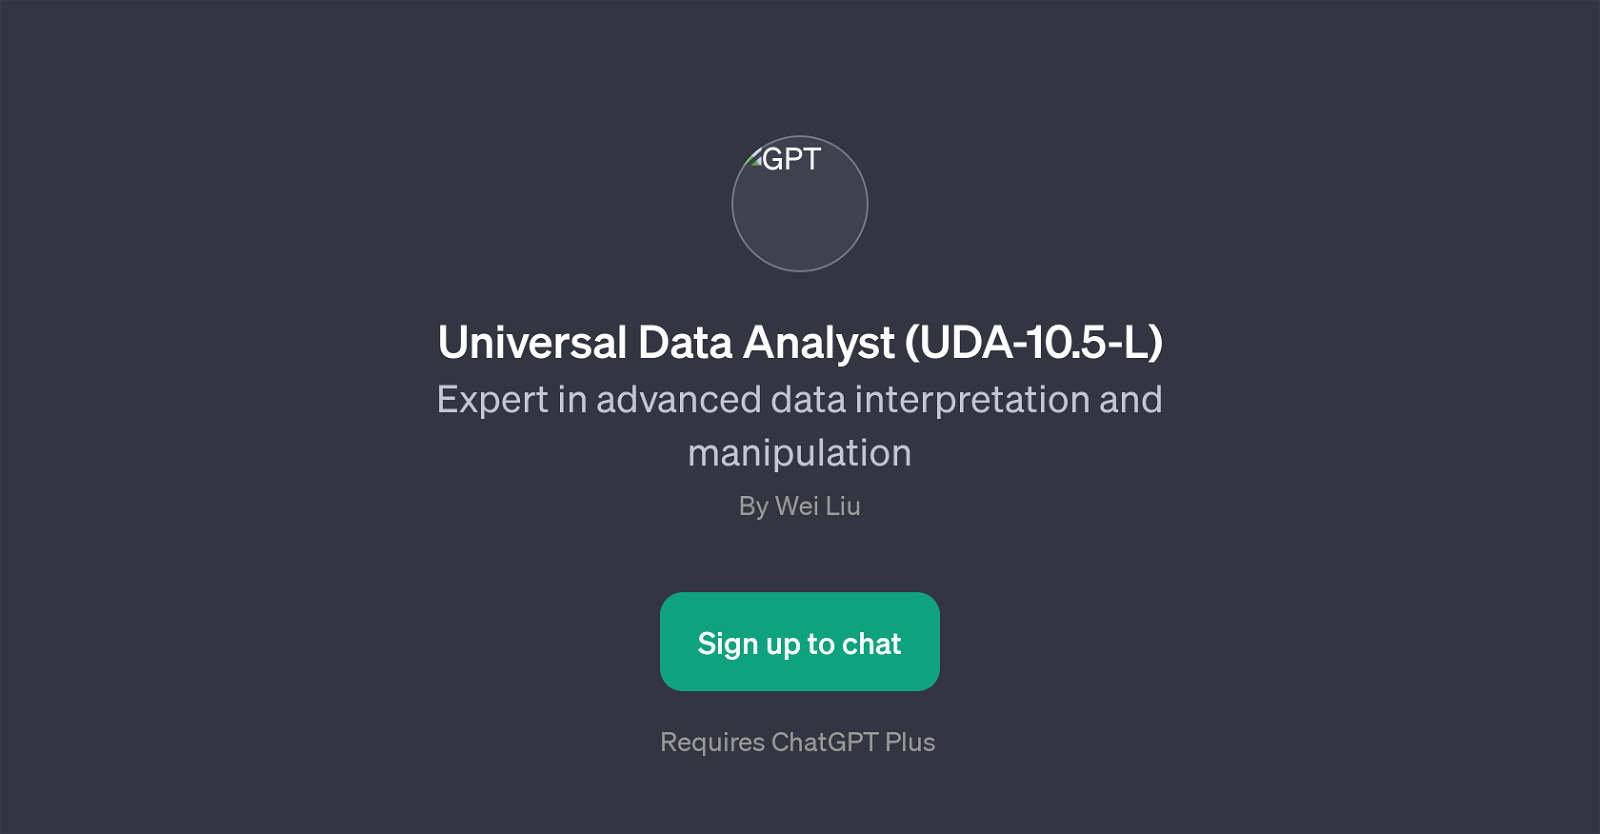 Universal Data Analyst (UDA-10.5-L) website